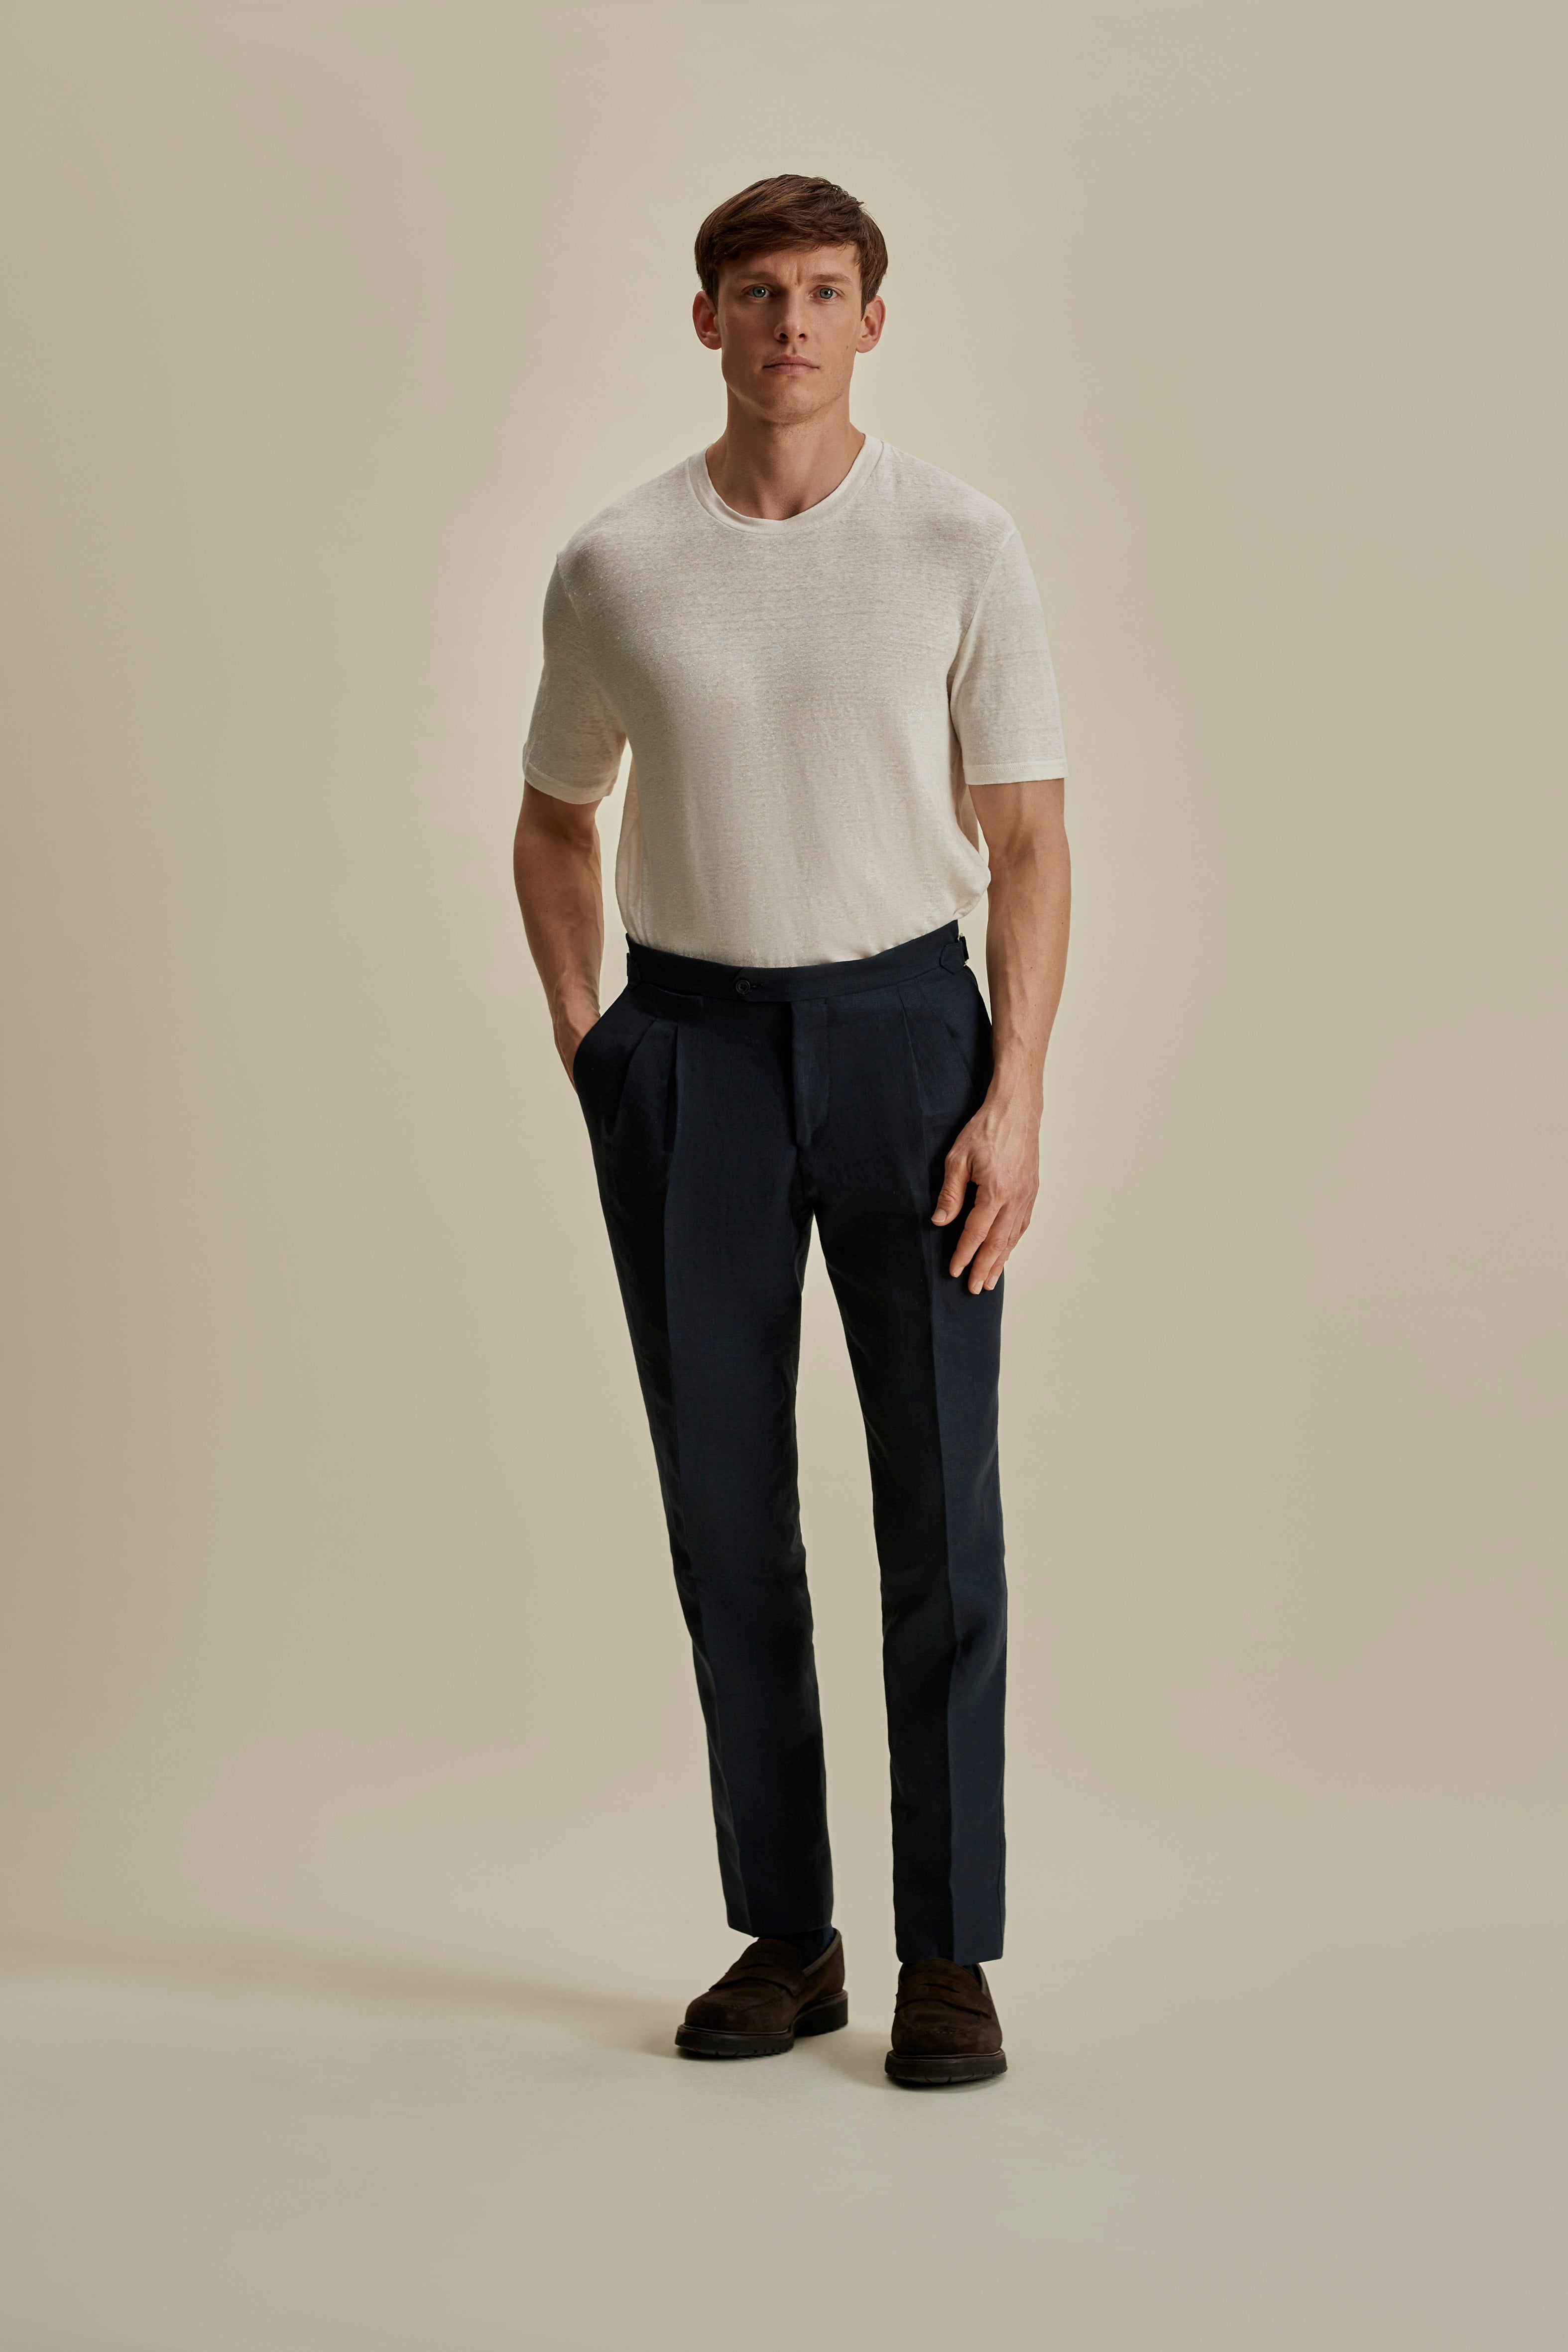 Linen Jersey T-Shirt White Full Length Model Image